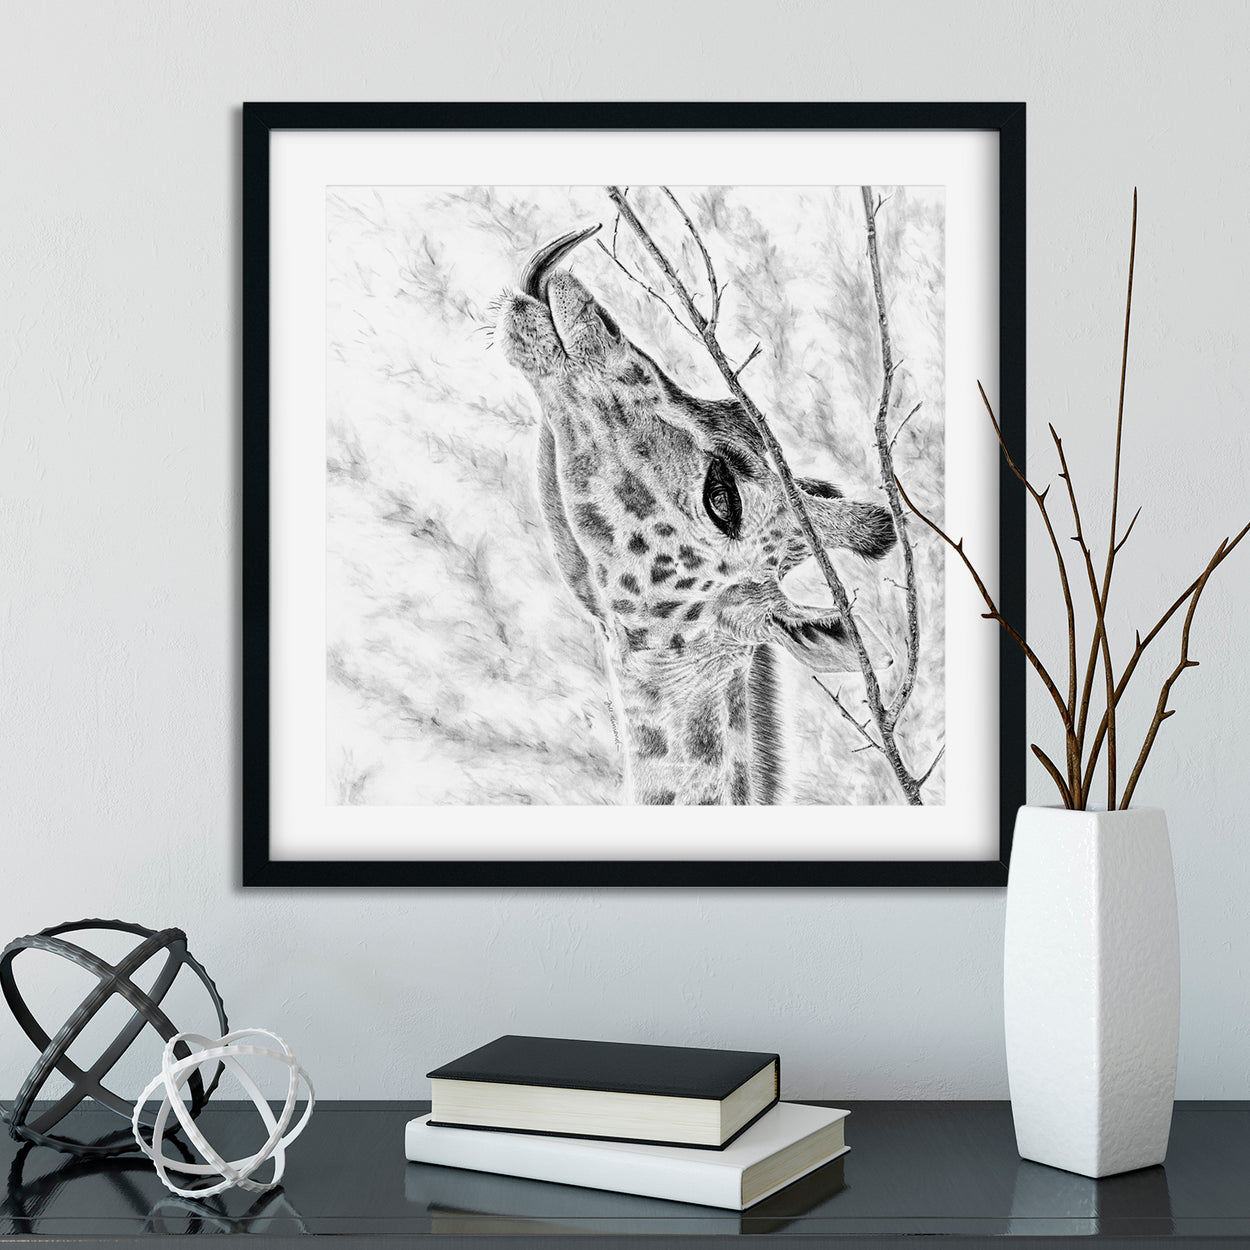 Giraffe Art Print Framed - The Thriving Wild